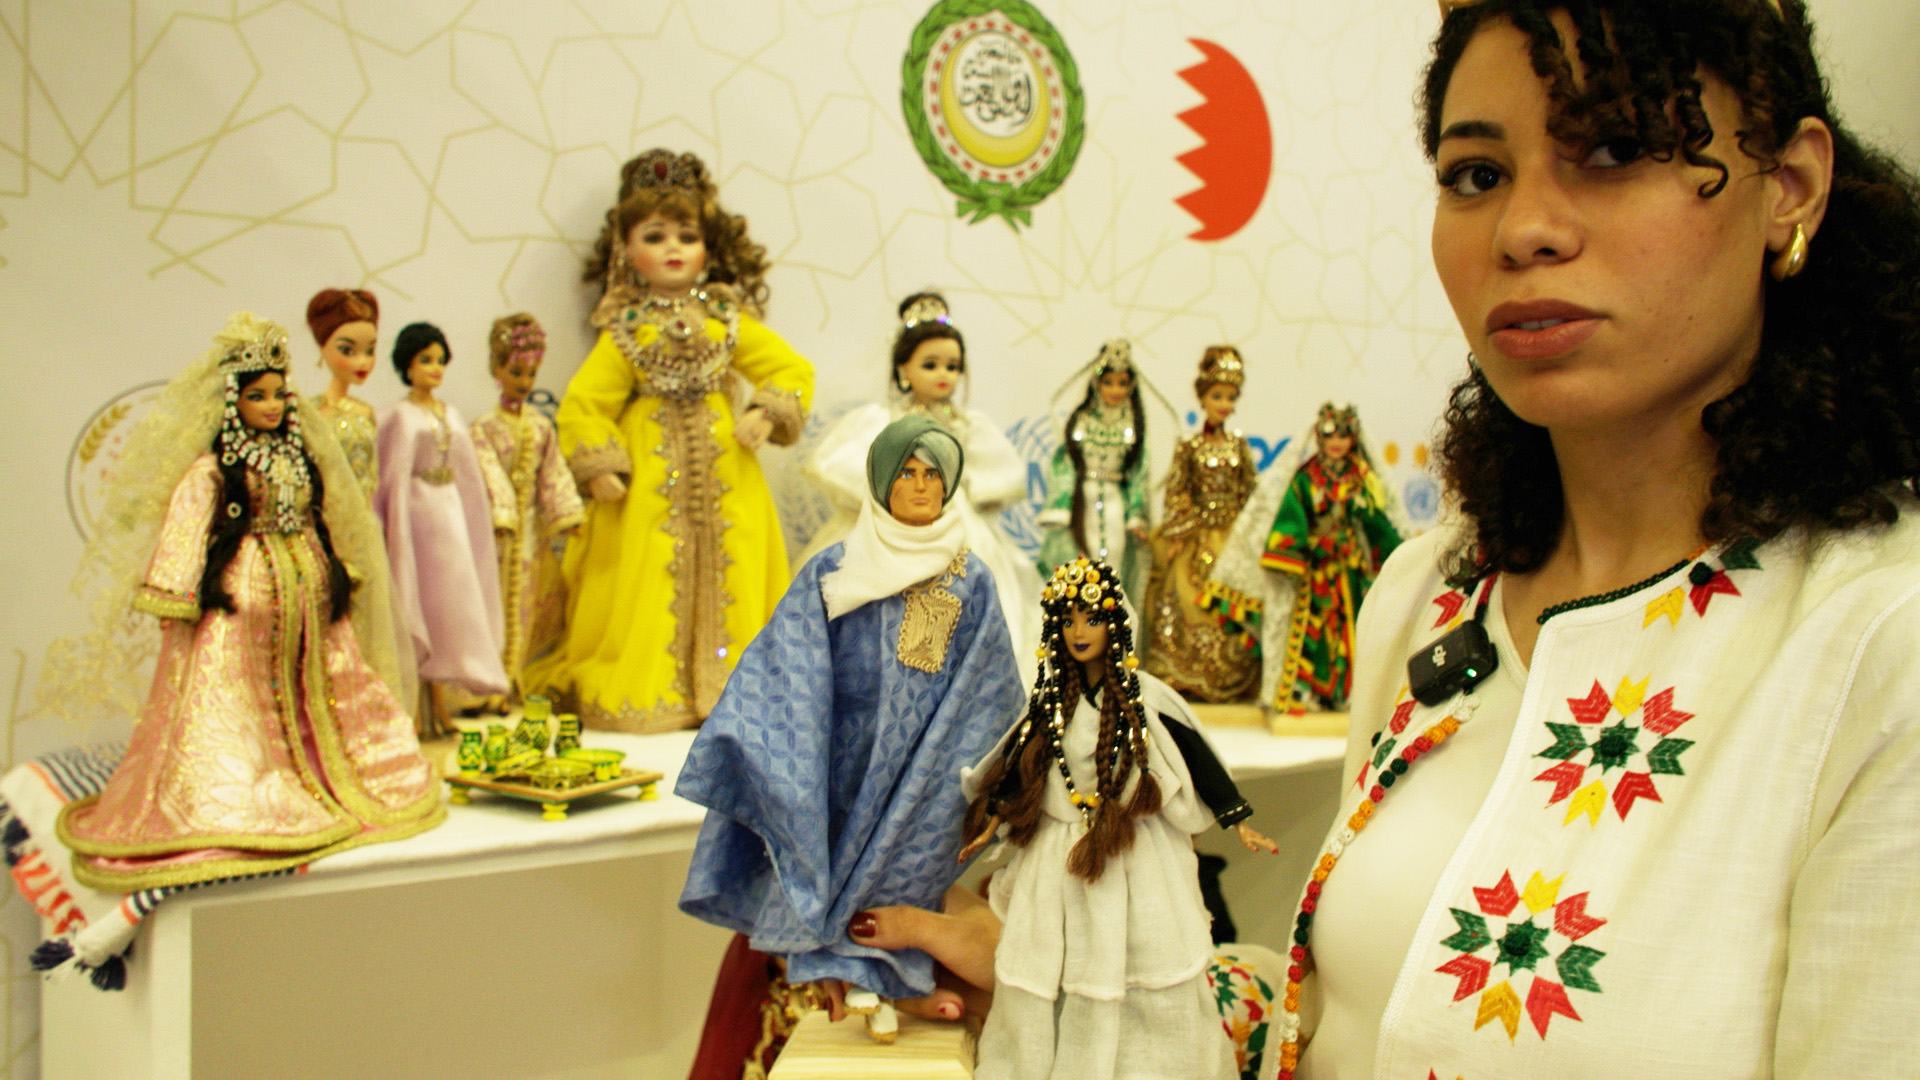 فاطمة الزهراء شابة من المغرب صاحبة مشروع "يطو" المتخصص في صناعة الدمى باللباس المغربي التقليدي.